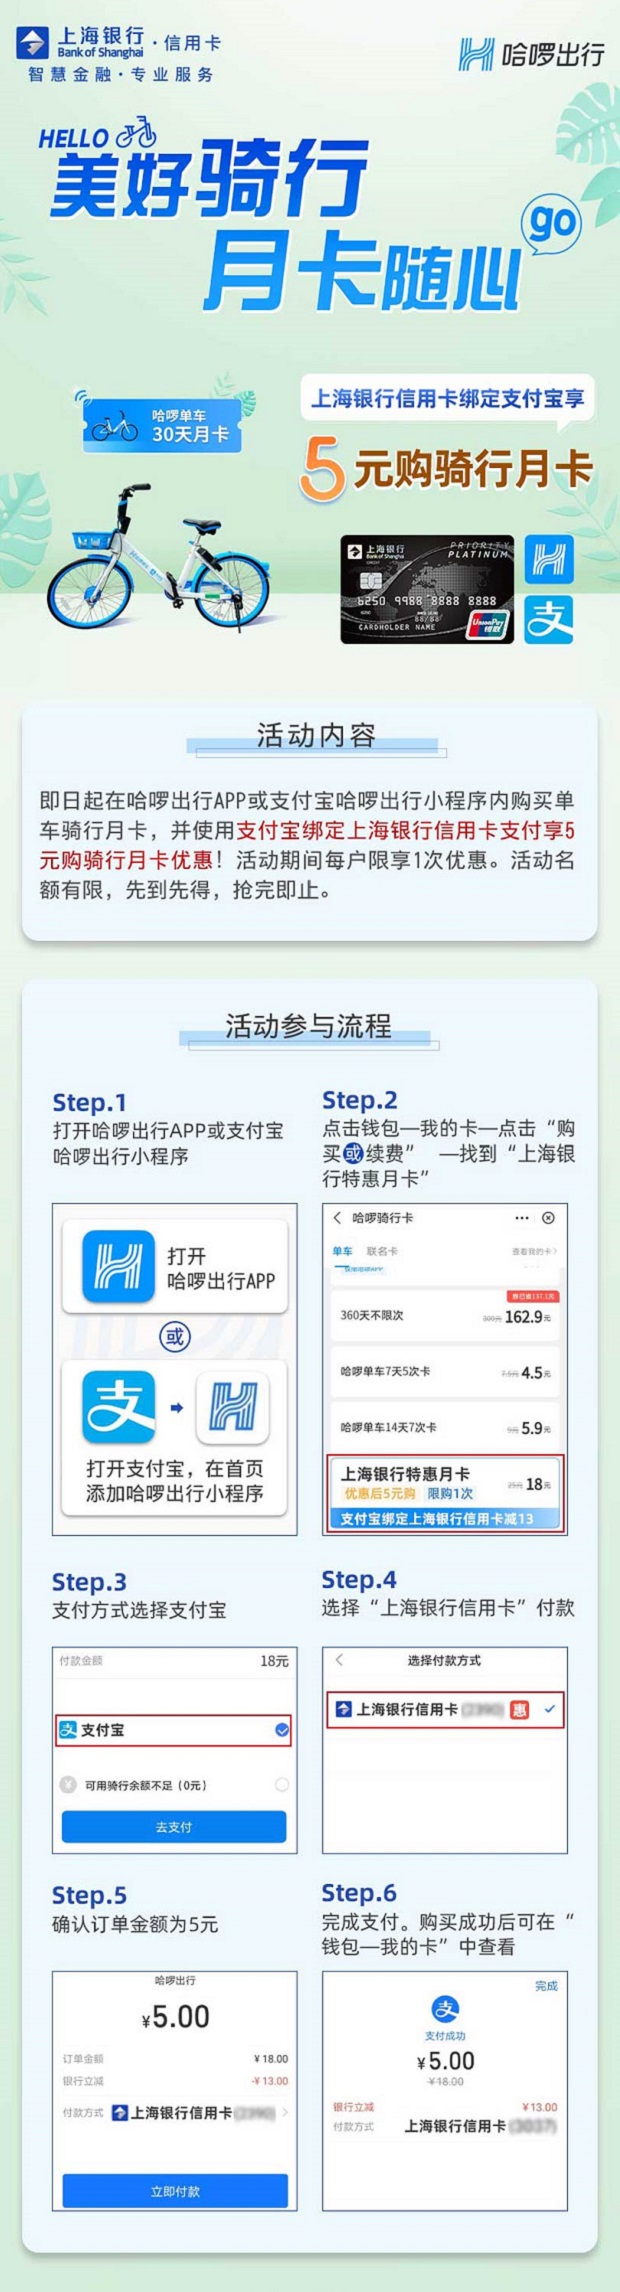 上海银行信用卡5元购哈啰单车骑行月卡